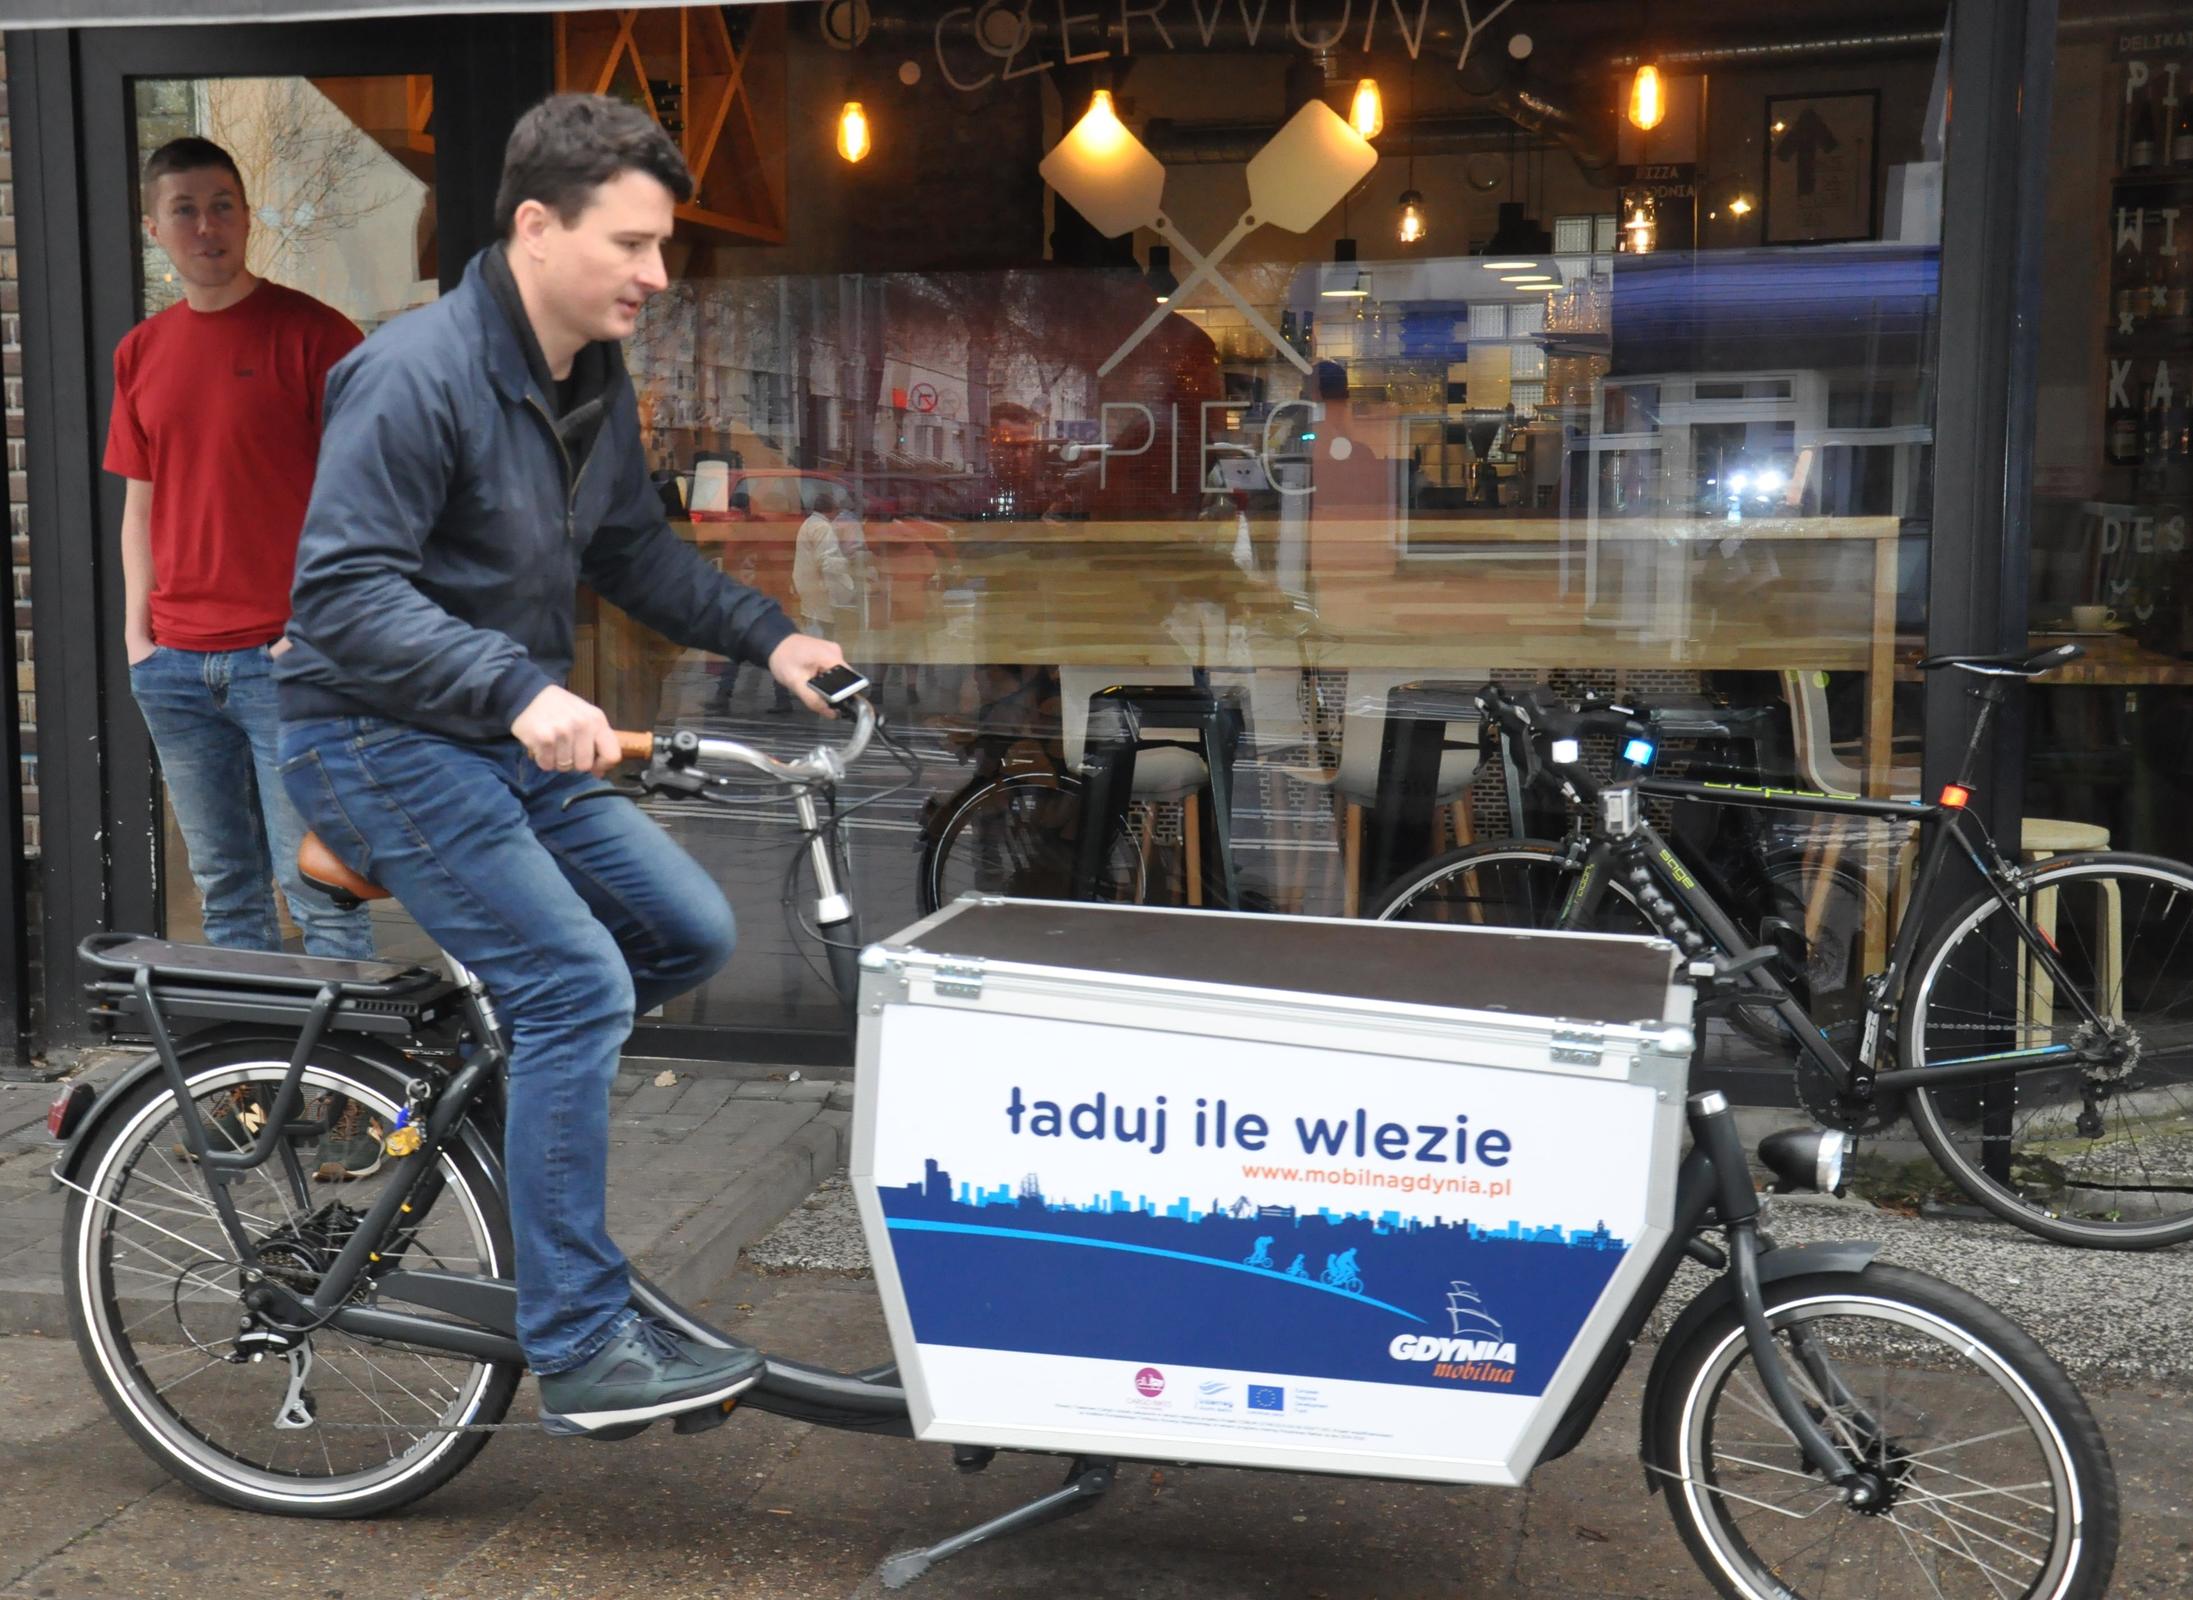 Miejski rower towarowy na testach u jednego z przedsiębiorców z branży gastronomicznej na początku realizowania projektu w 2018 roku, fot. Magdalena Czernek / archiwalne (2018)